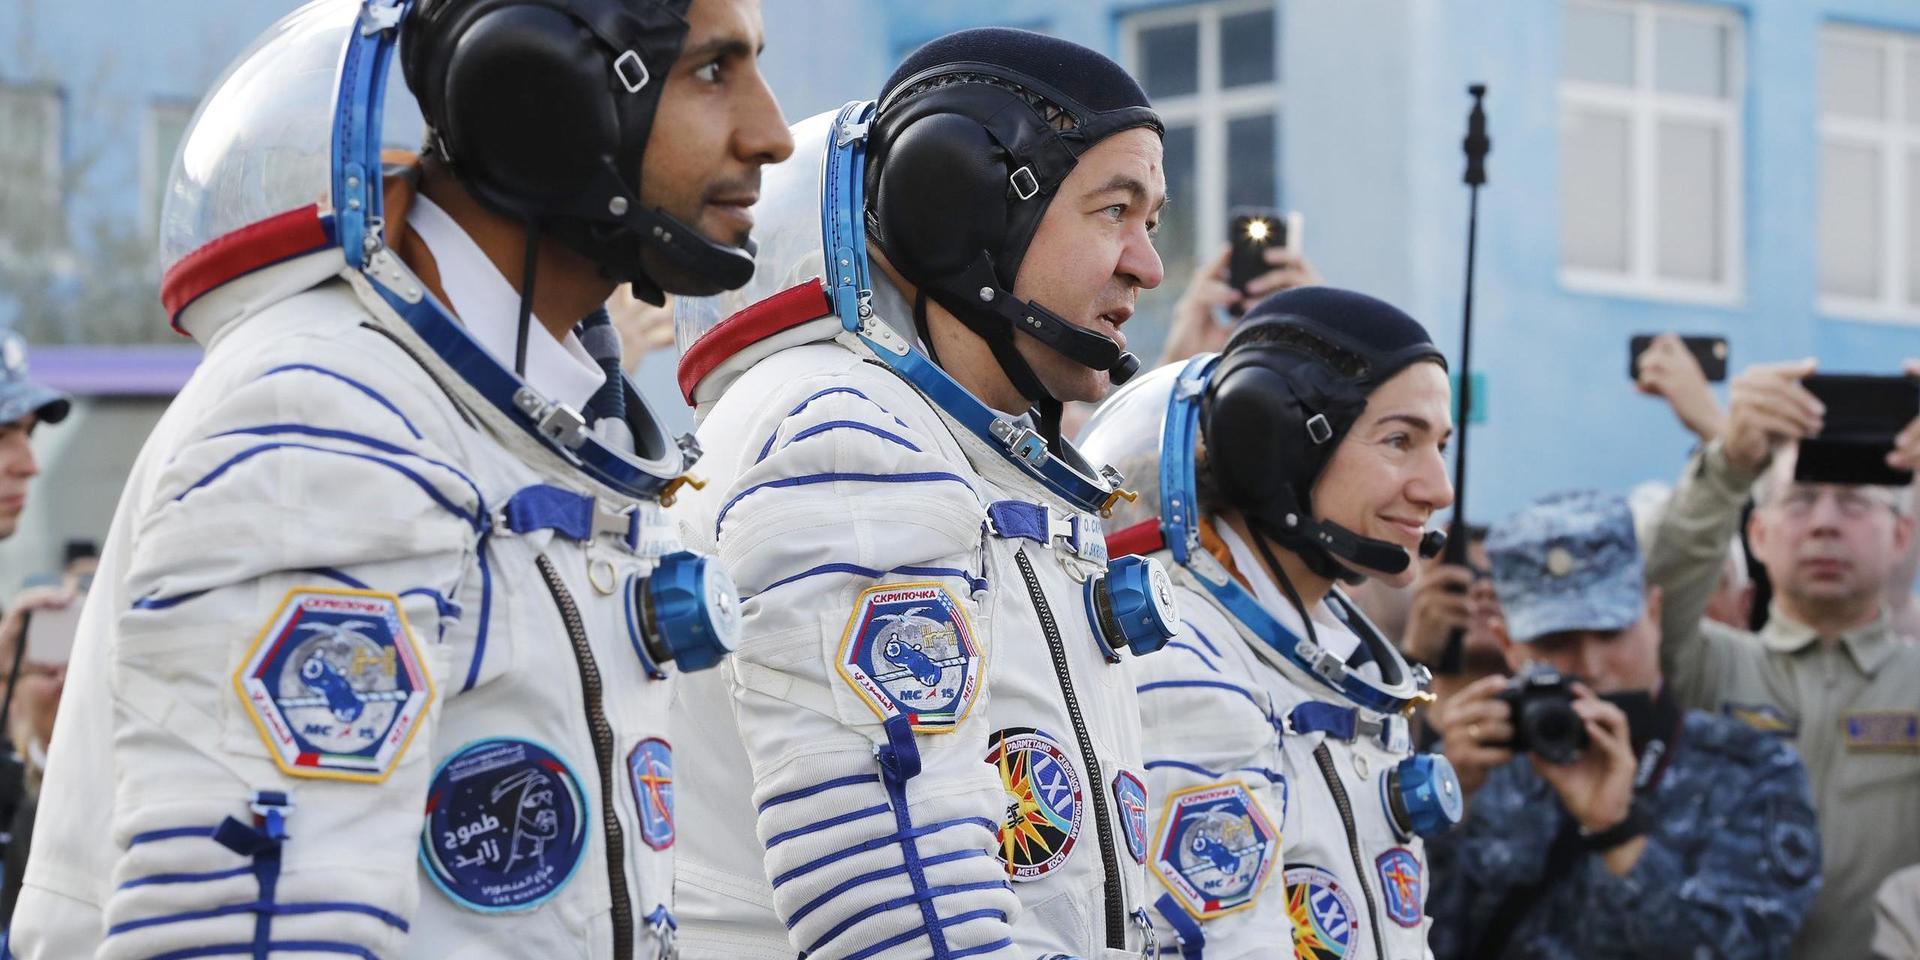 Kommer rymdfarare som dessa att ha flera olika stationer att åka till i framtiden? Bild från när Hazza Almansoori, Oleg Skripotjka och svensk-amerikanska Jessica Meir skulle upp till ISS 2019.